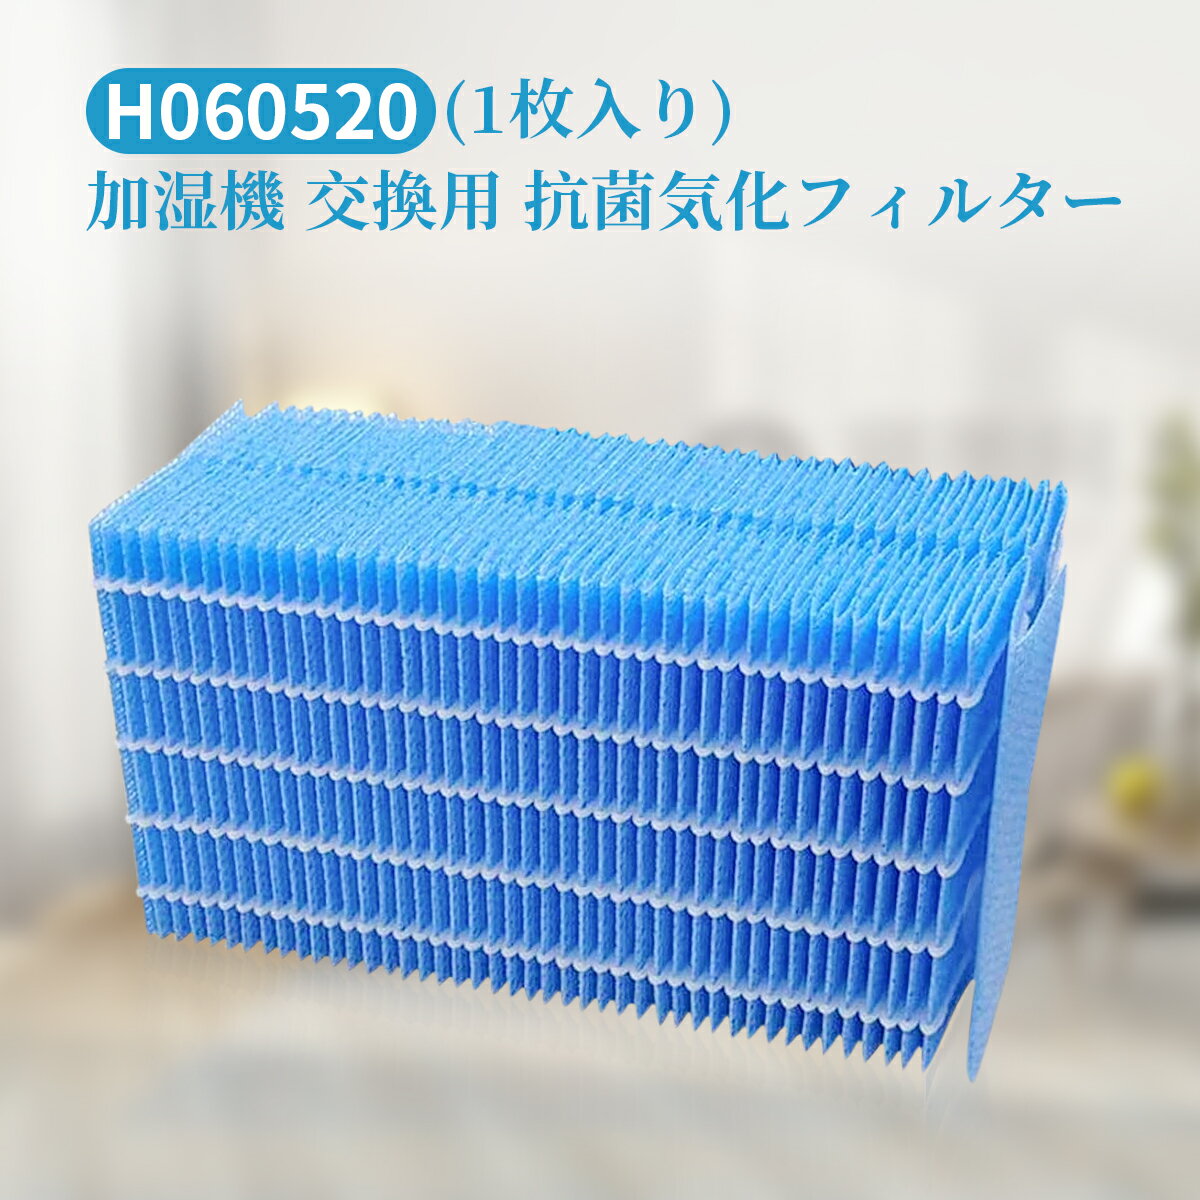 ダイニチ 加湿器 フィルター H060520 抗菌気化フィルター h060520 加湿機HD-LX1019 HD-LX1020 HD-LX1219 HD-LX1220 交換用加湿フィルター（互換品/1枚入り）